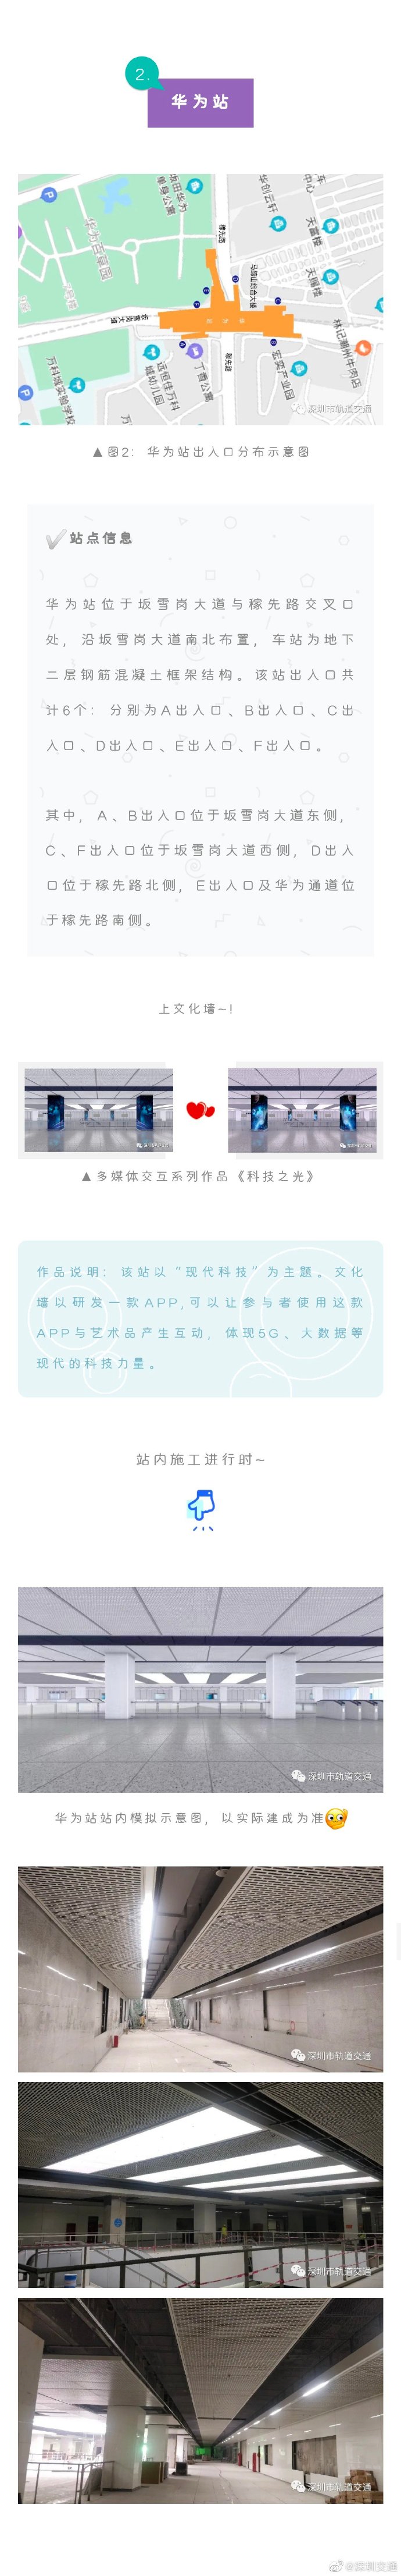 又更新啦!深圳地铁10号线华为片区三站更新